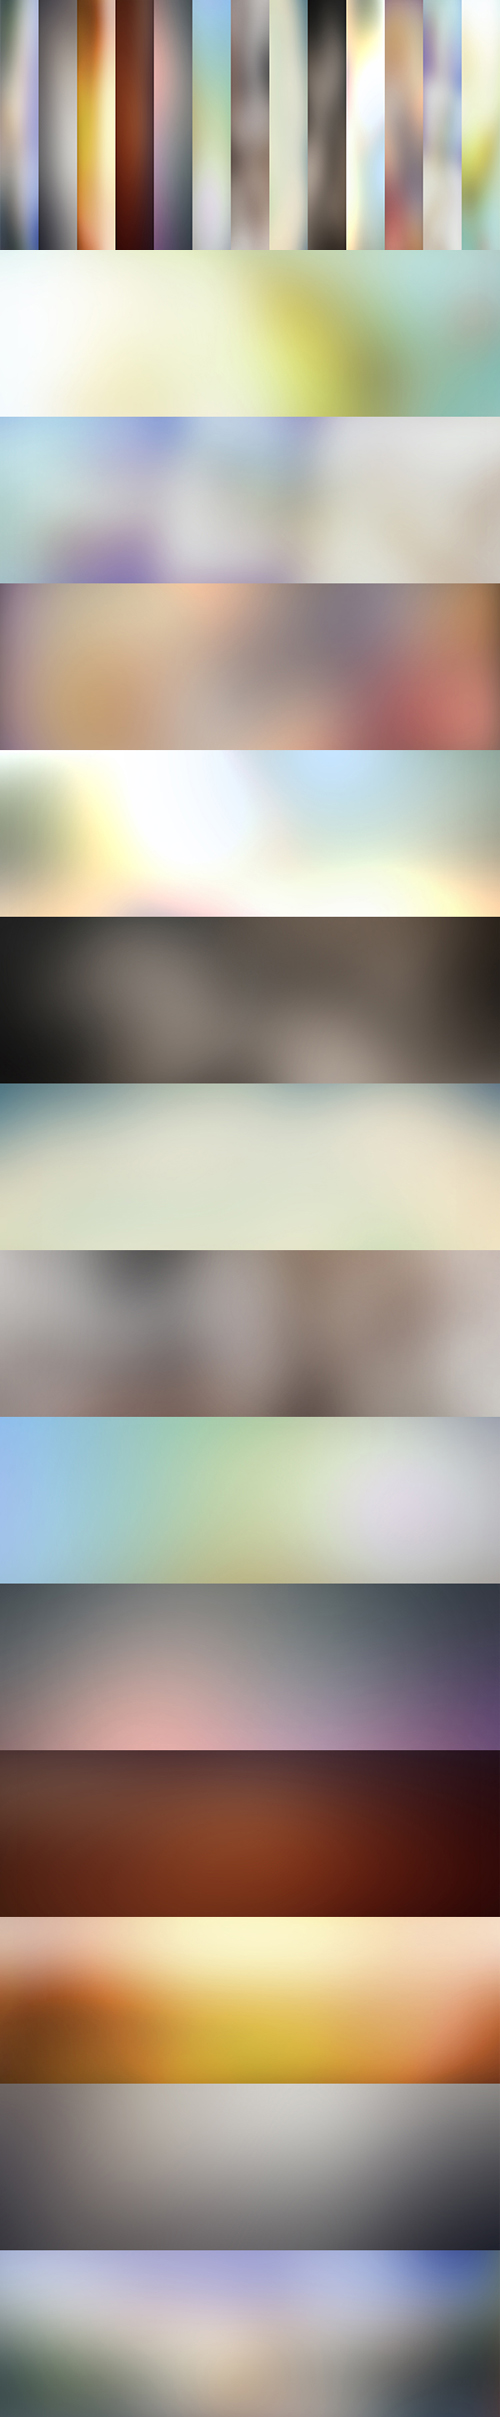 13 High-Resolution Blur Backgrounds (JPEG)